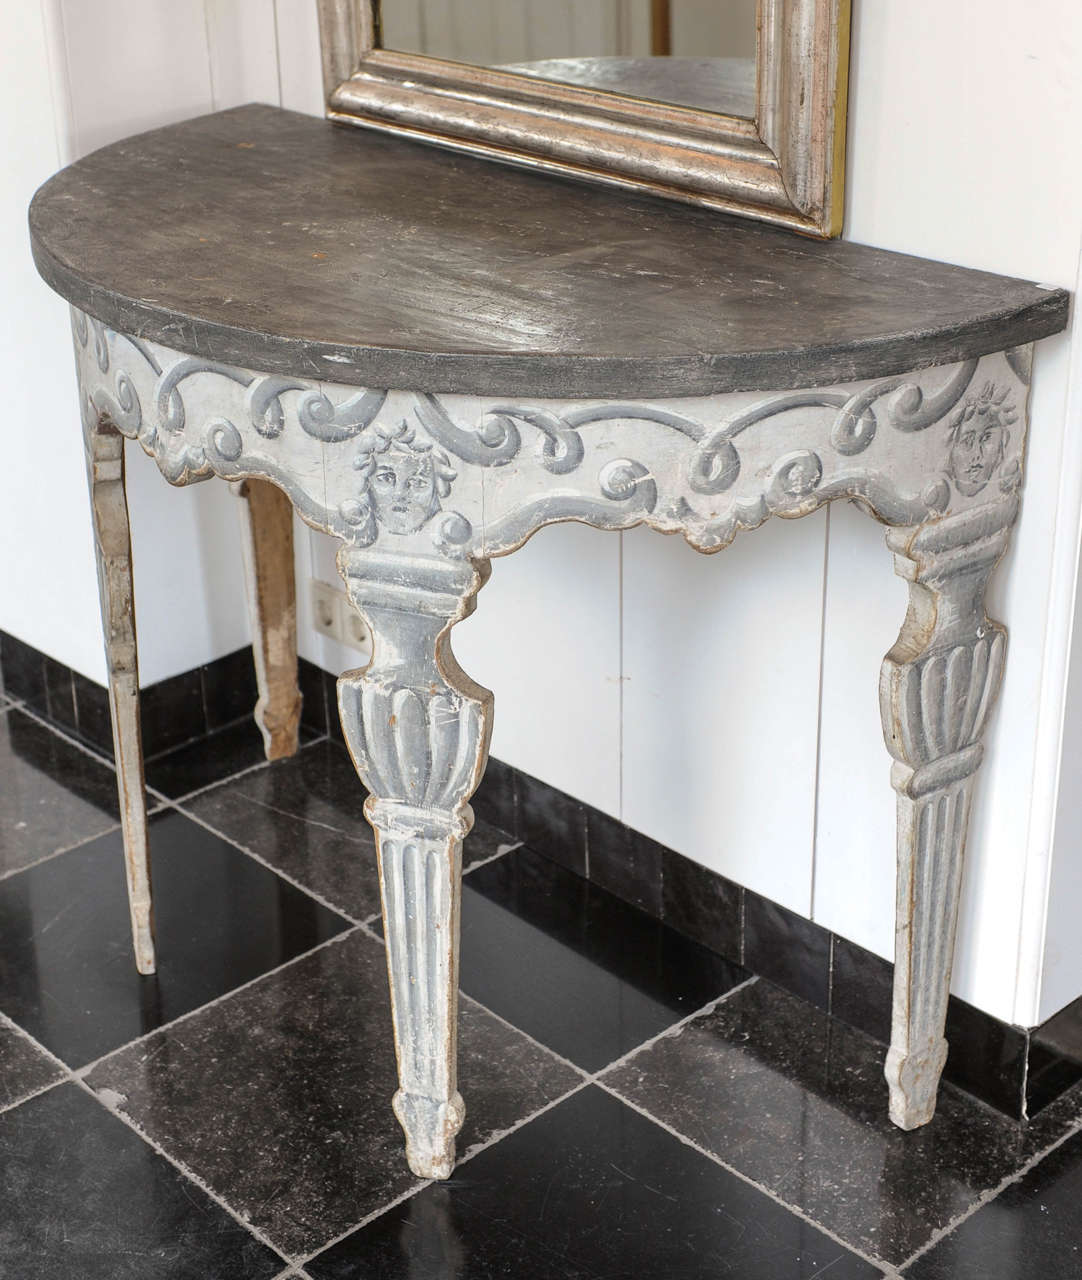 Table d'appoint italienne ancienne de style néoclassique, datant d'environ 1800, avec des décorations peintes en gris ajoutées à une date ultérieure.

Mesures : Hauteur 90 cm x largeur 120 cm x profondeur 59,5 cm.